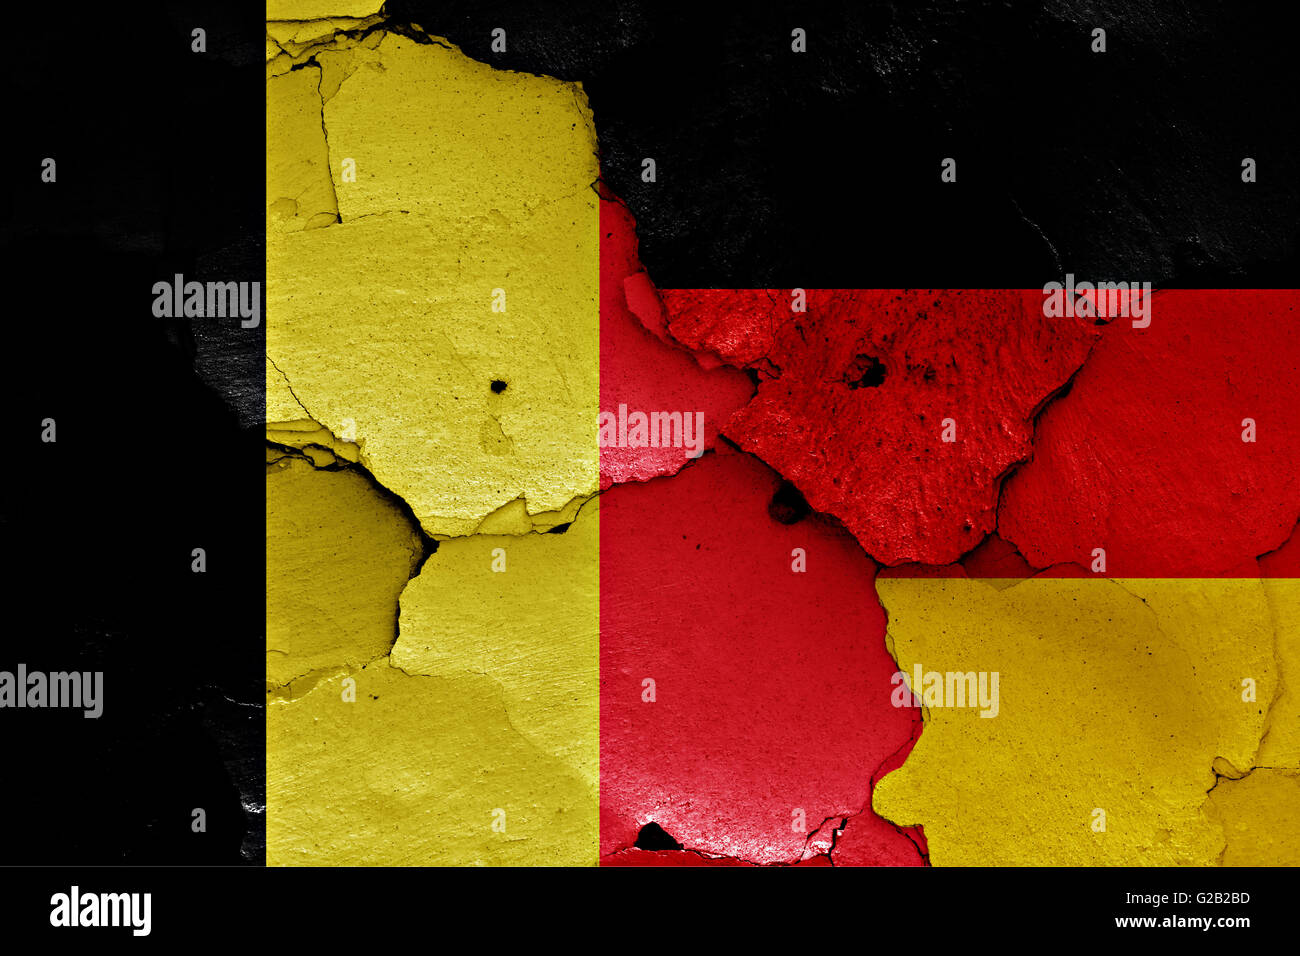 Flagge Von Belgien Und Deutschland Auf Rissige Wand Gemalt Stockfotografie Alamy